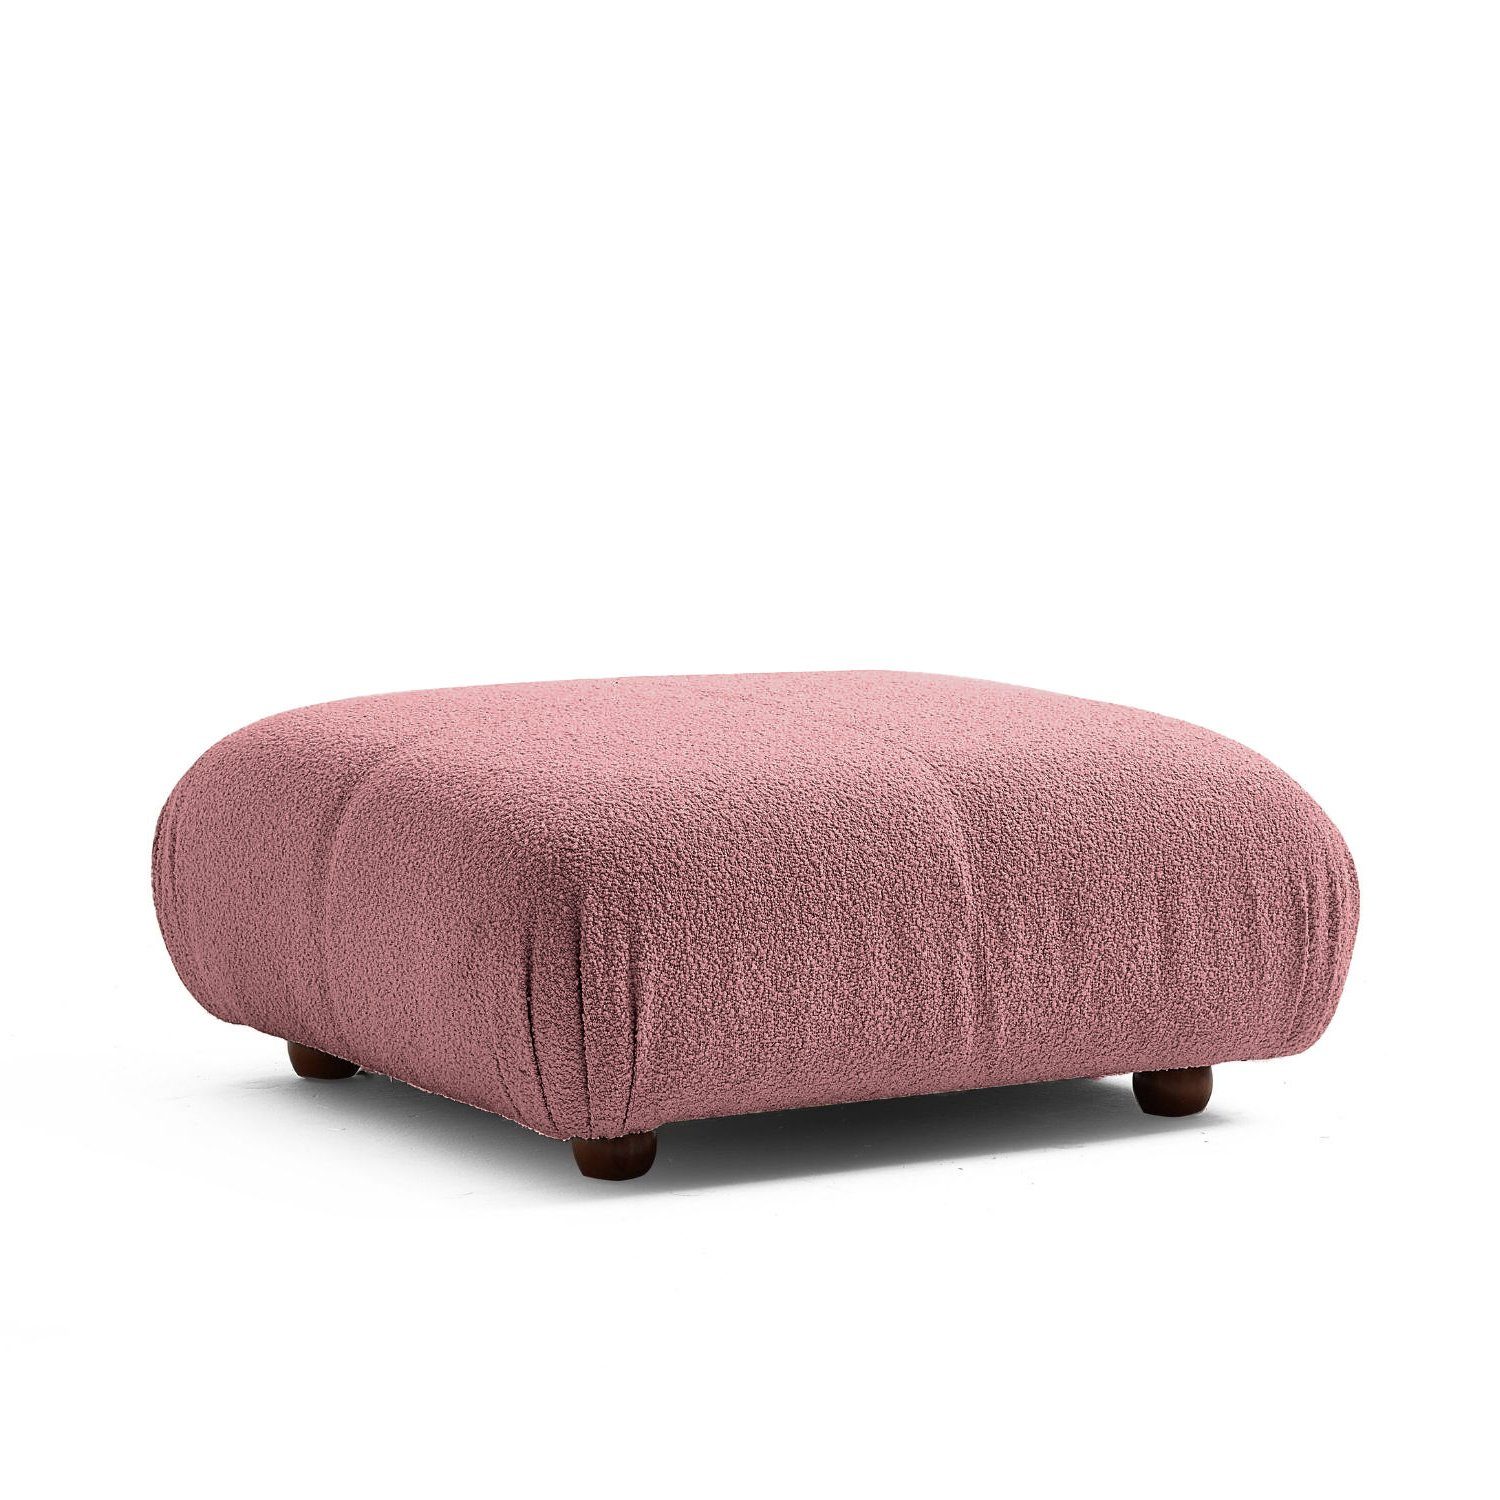 Touch me Sofa Knuffiges Sitzmöbel neueste Generation aus Komfortschaum Samtrot-Lieferung und Aufbau im Preis enthalten!